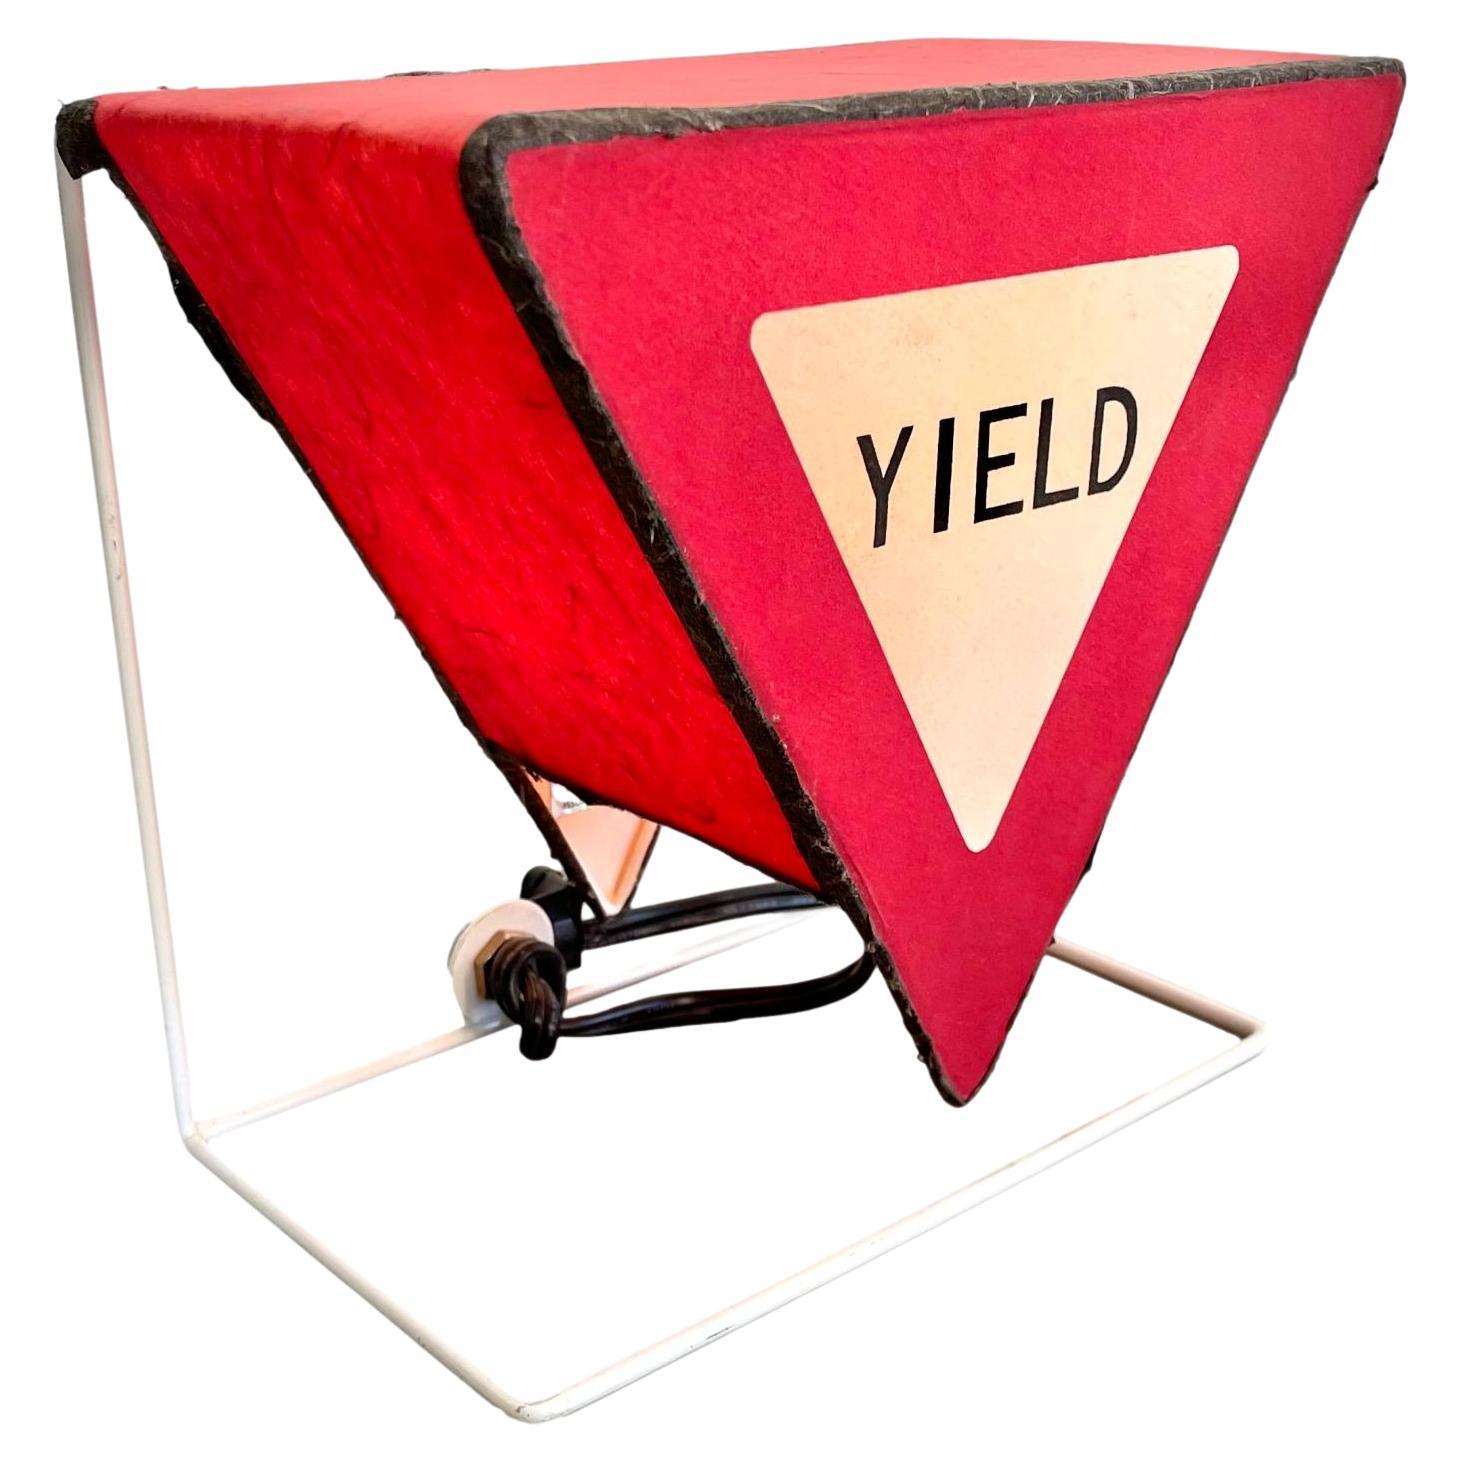 „Yield“-Schild aus Leuchtenpapier, 1980er-Jahre